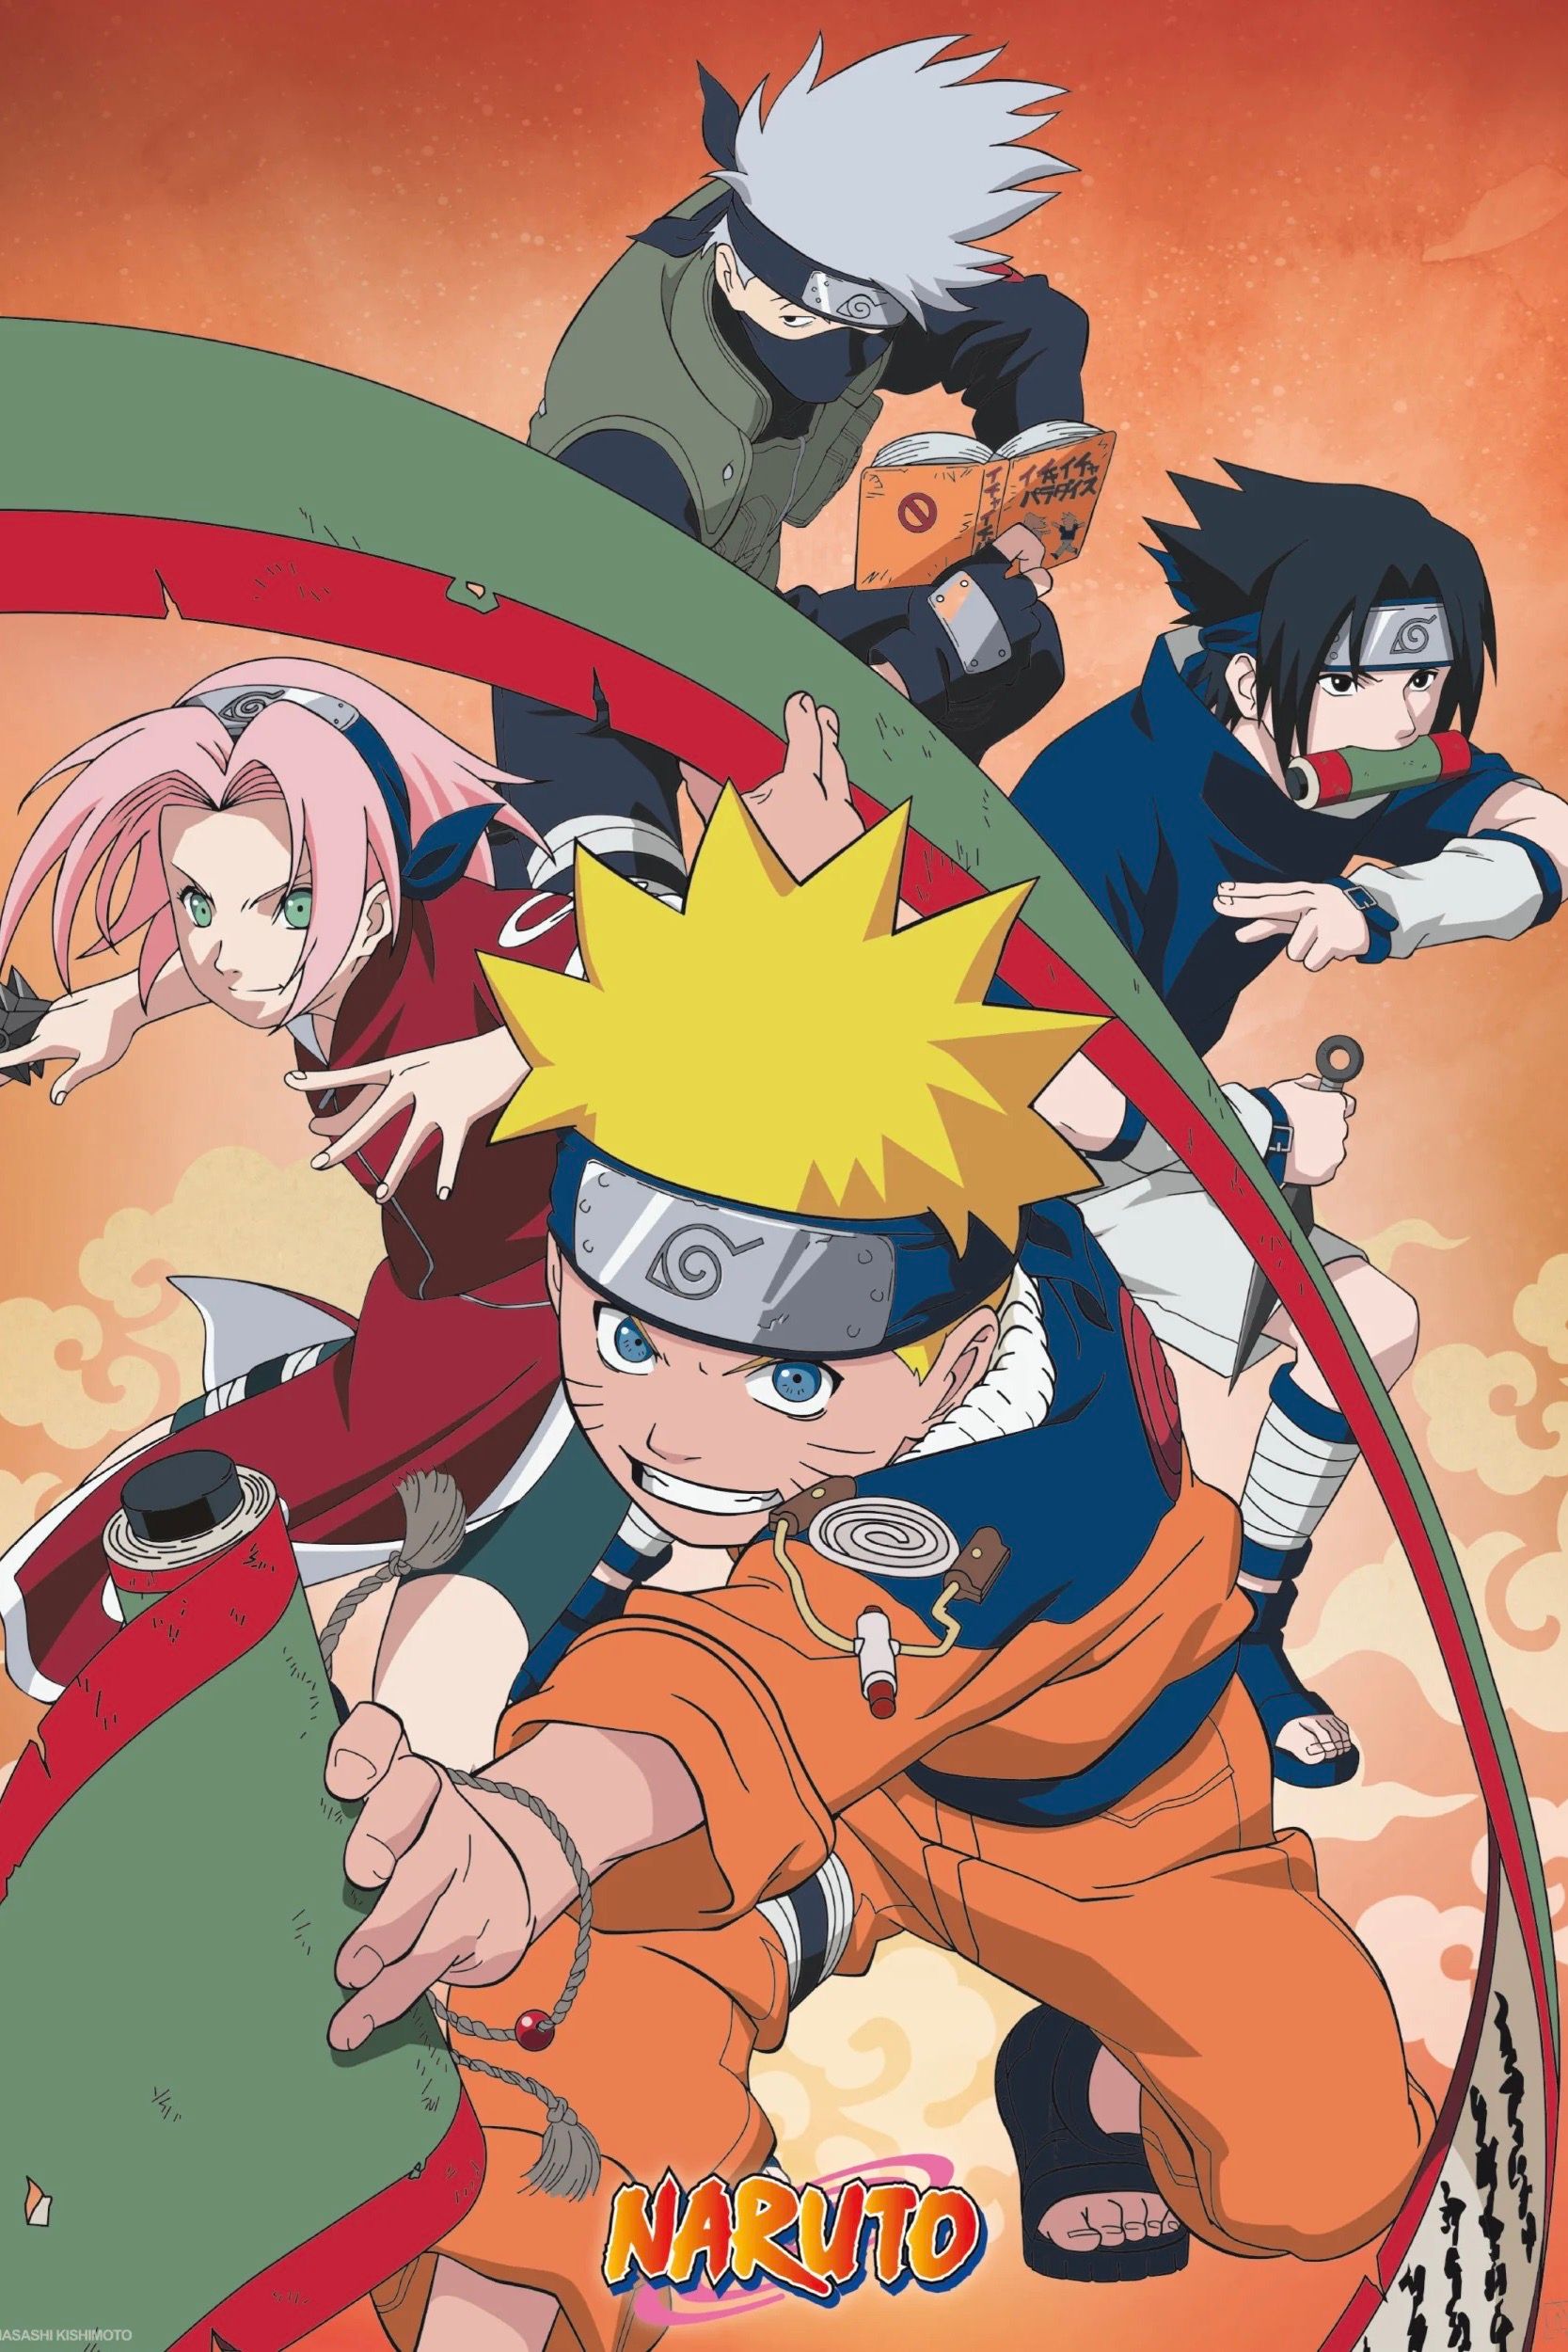 Naruto TV Show Poster